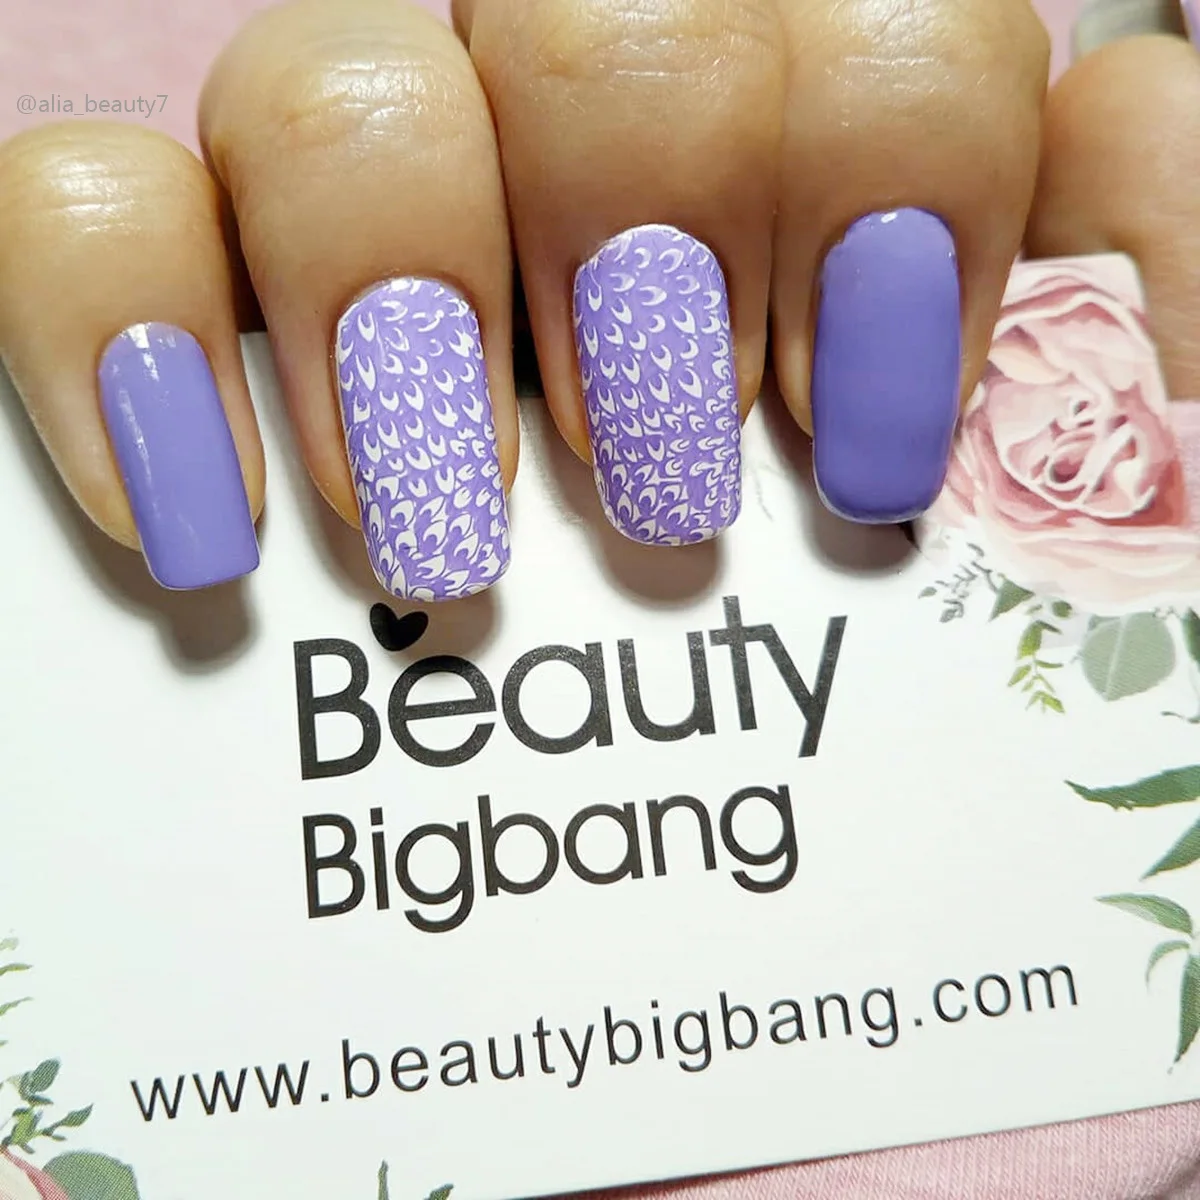 BEAUTYBIGBANG дизайн ногтей штамповка прямоугольные с принтом Цветочный рисунок шаблон пластины для маникюра трафарет для ногтей штамп пластины XL-041